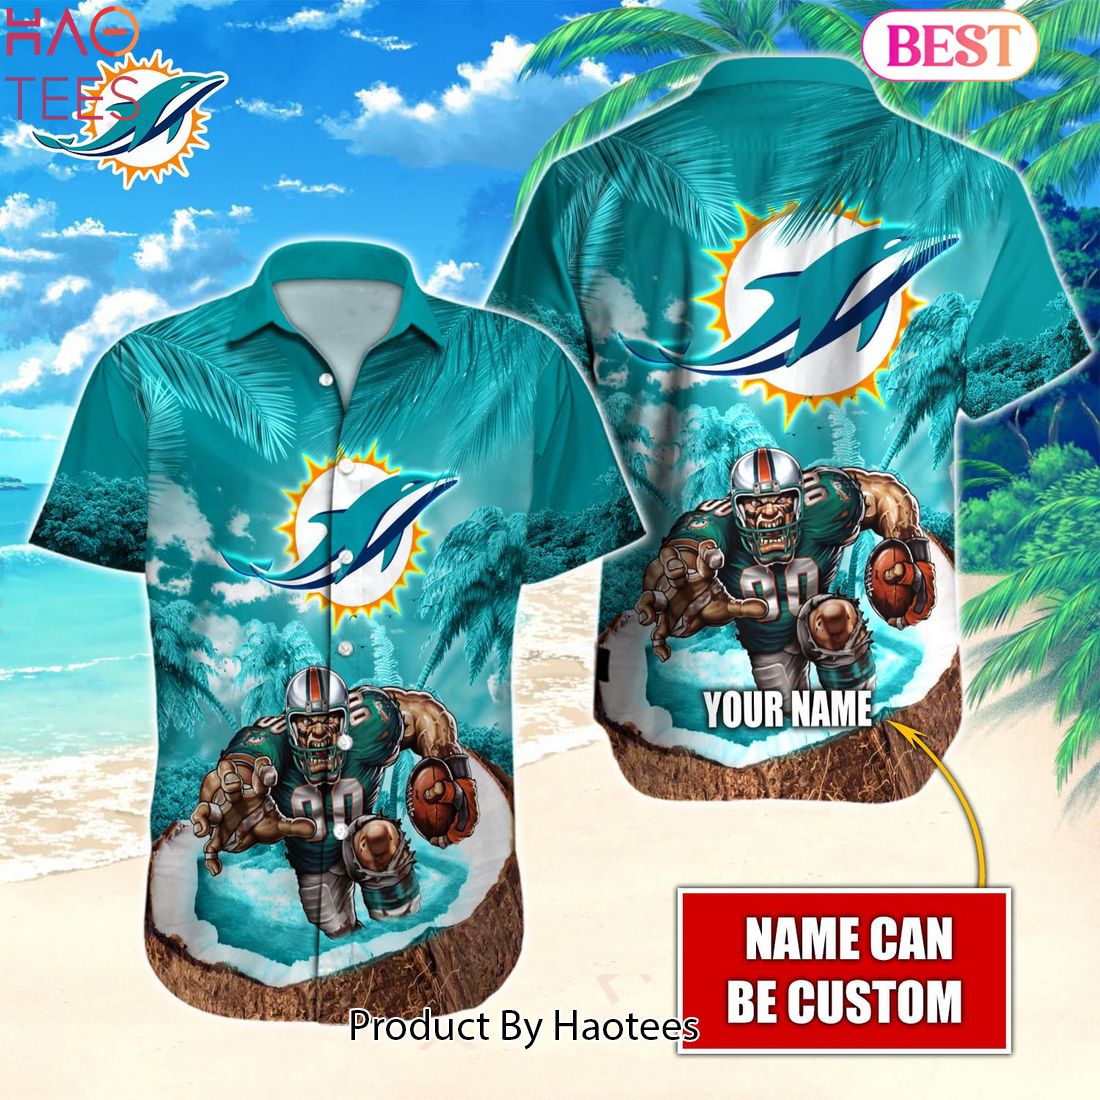 Miami Dolphins Football Ball Hawaiian Shirt - Reallgraphics